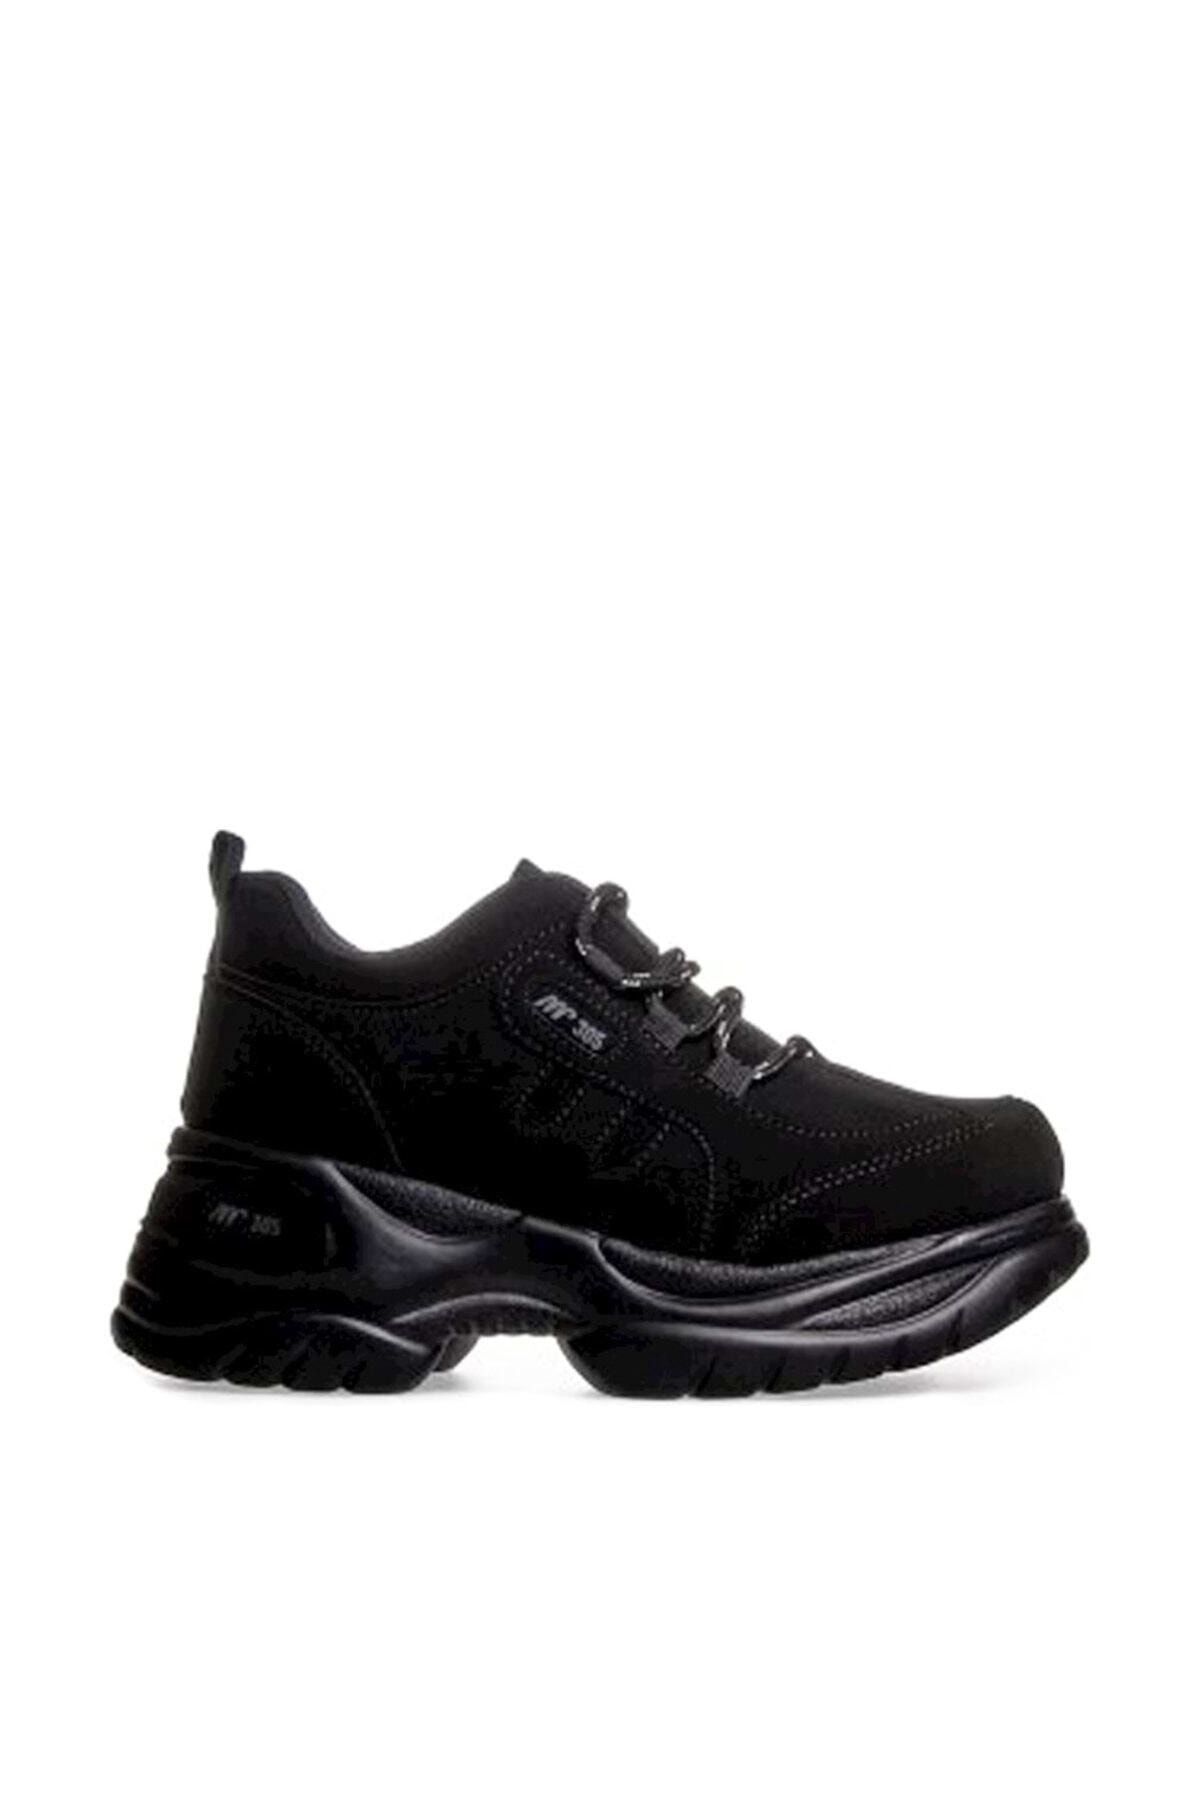 MP Kadın Dolgu Topuk Siyah Casual Ayakkabı 192-305zn 100